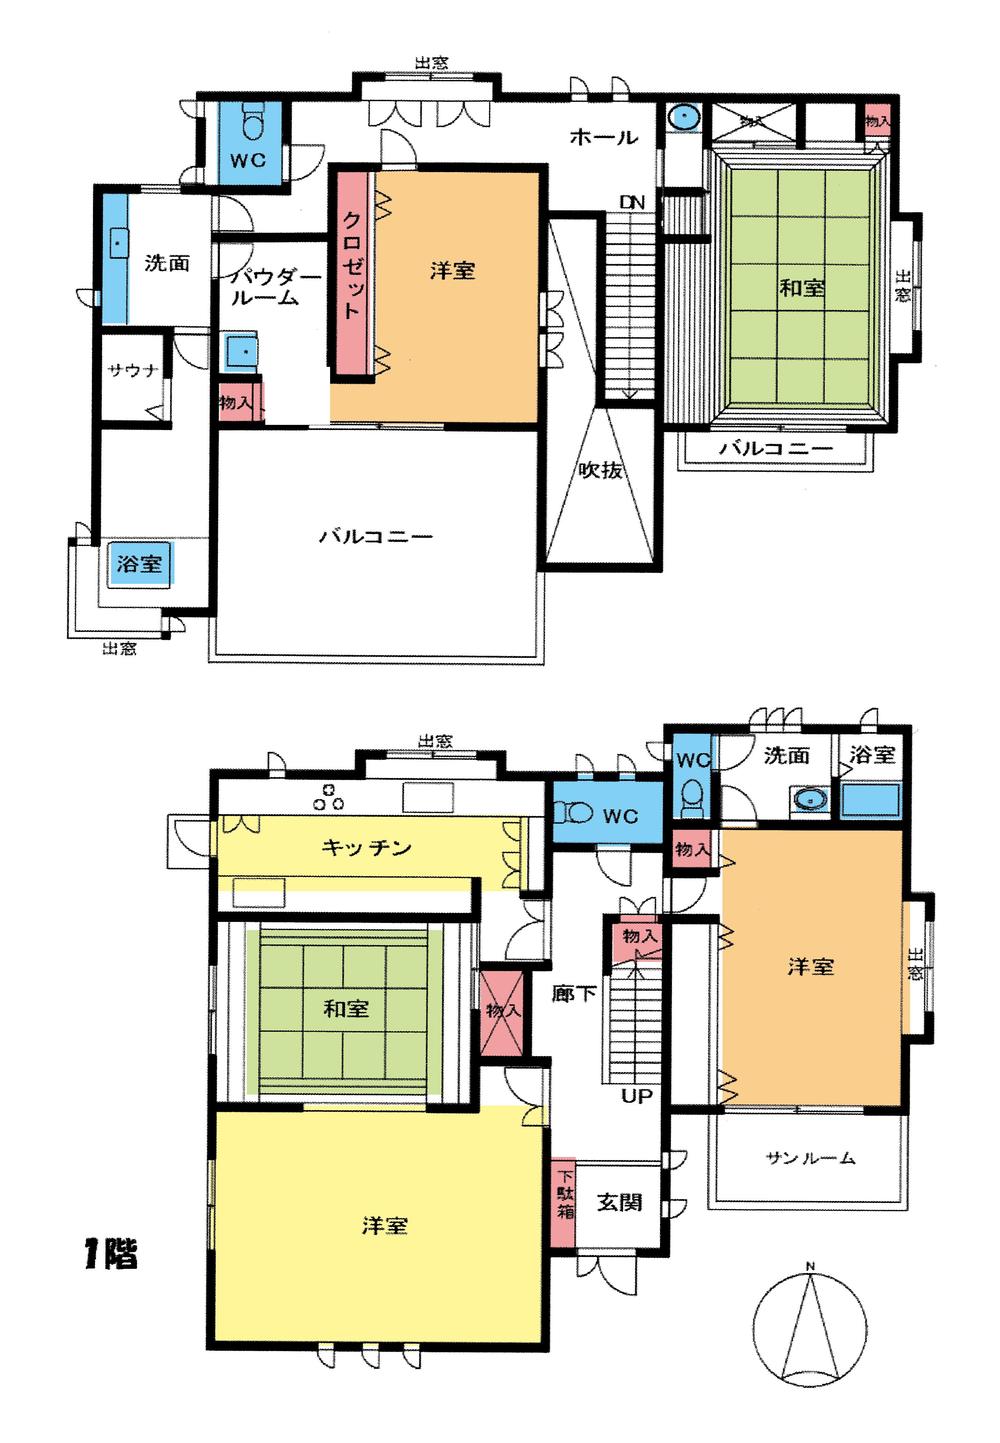 Floor plan. 34,900,000 yen, 4LDK, Land area 765.02 sq m , Building area 223.07 sq m floor plan